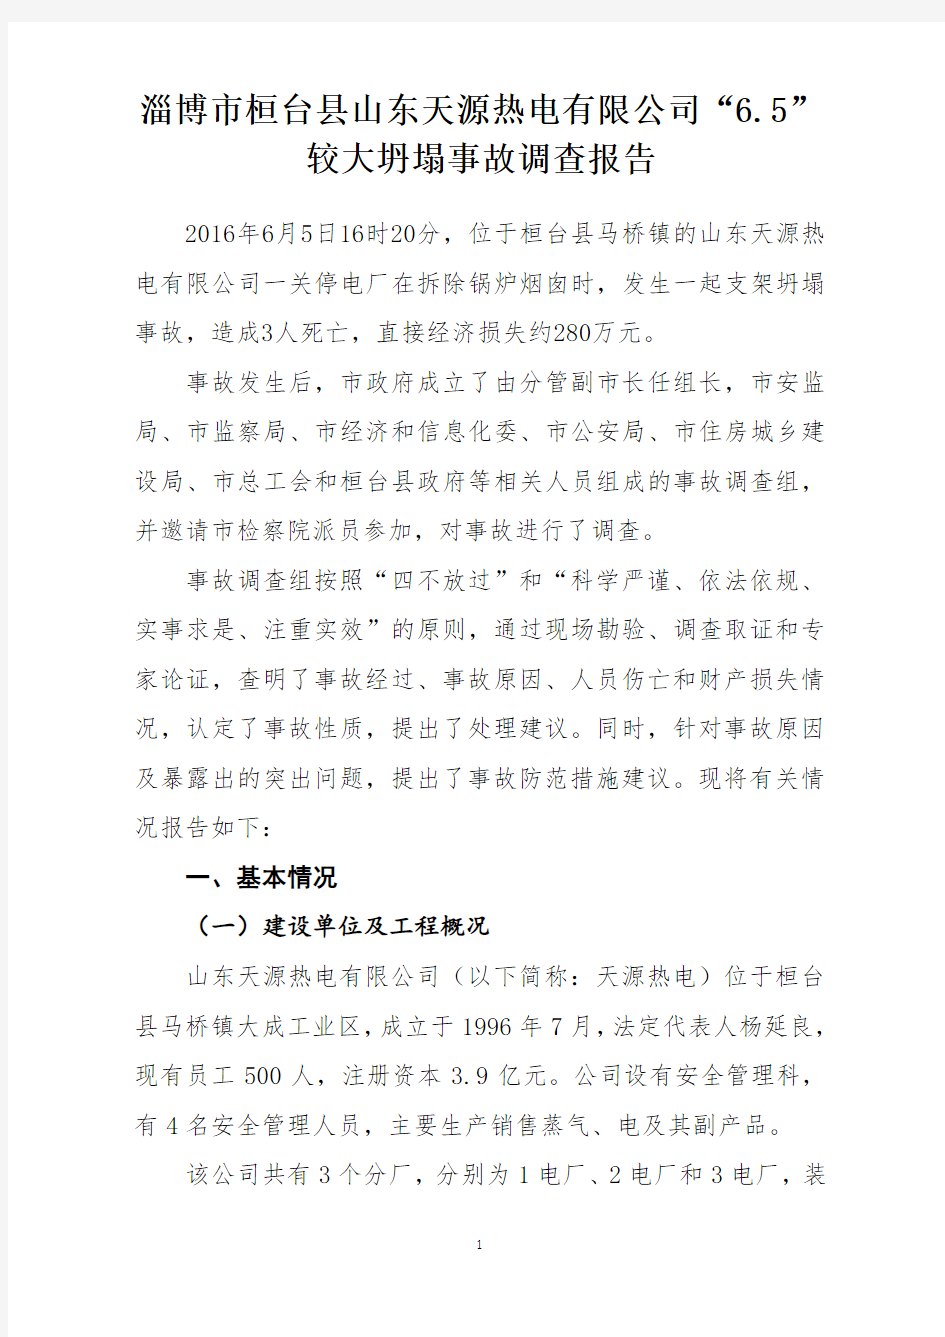 淄博市桓台县山东天源热电有限公司“6.5”较大坍塌事故调查报告